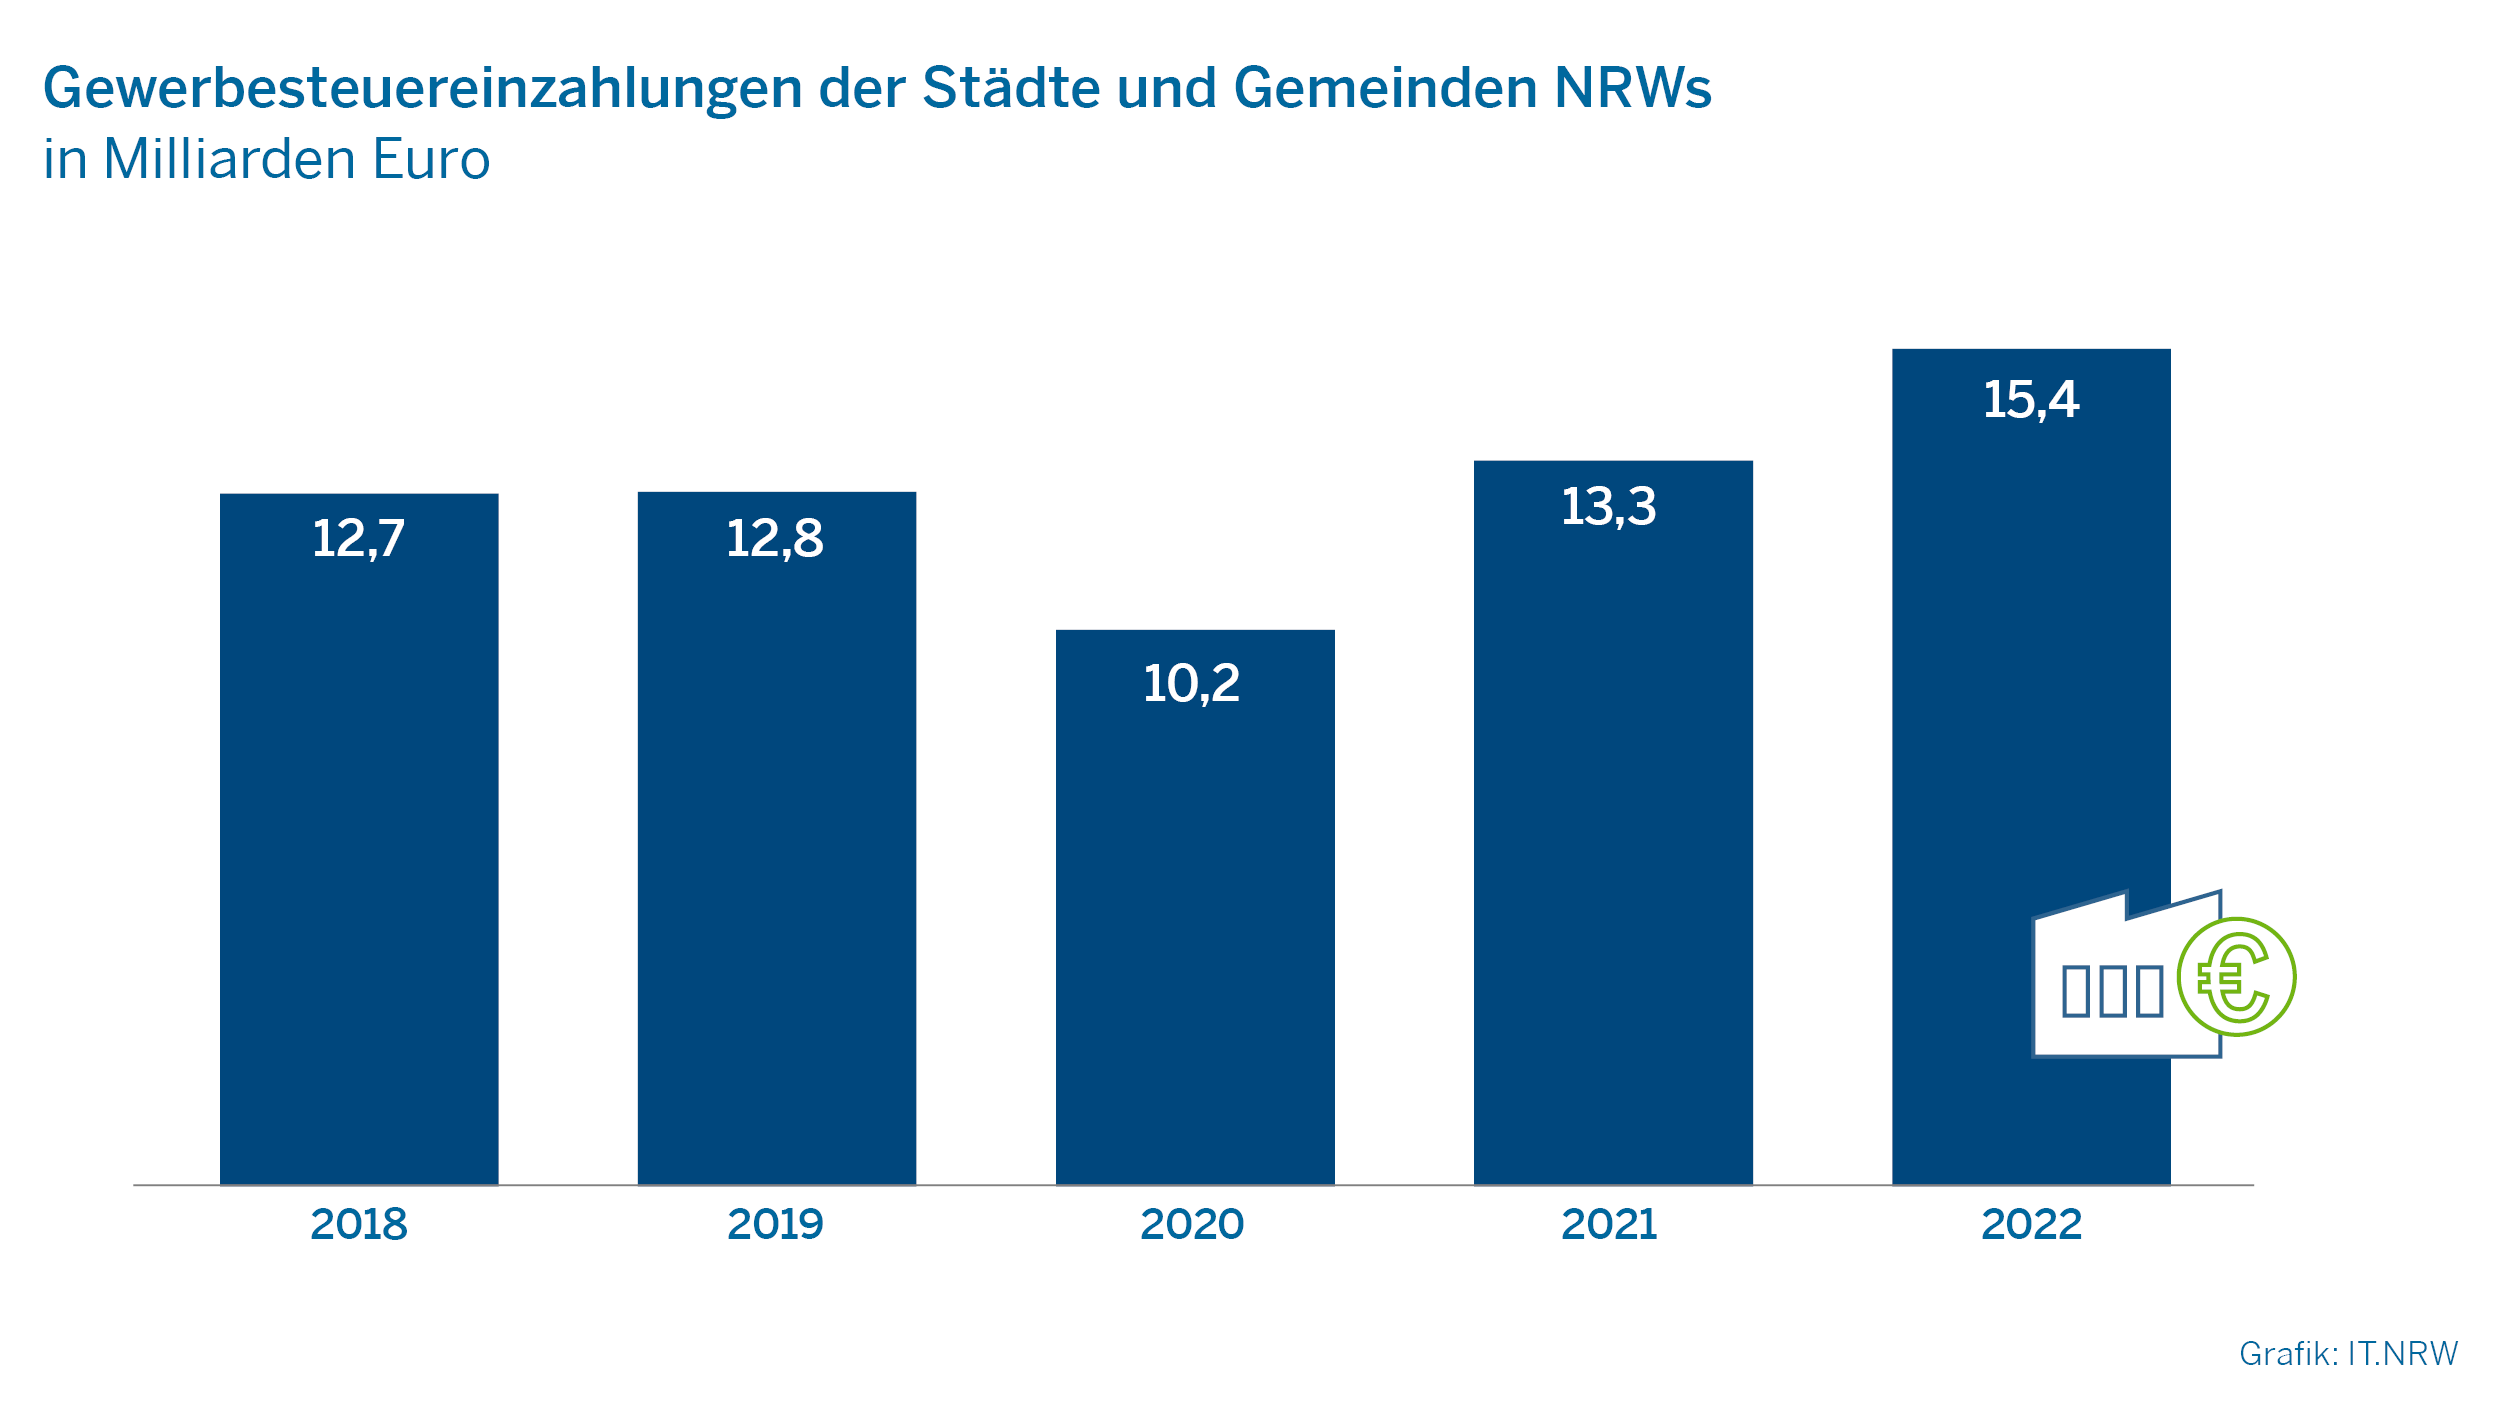 Gewerbesteuereinzahlungen der Städte und Gemeinden NRWs